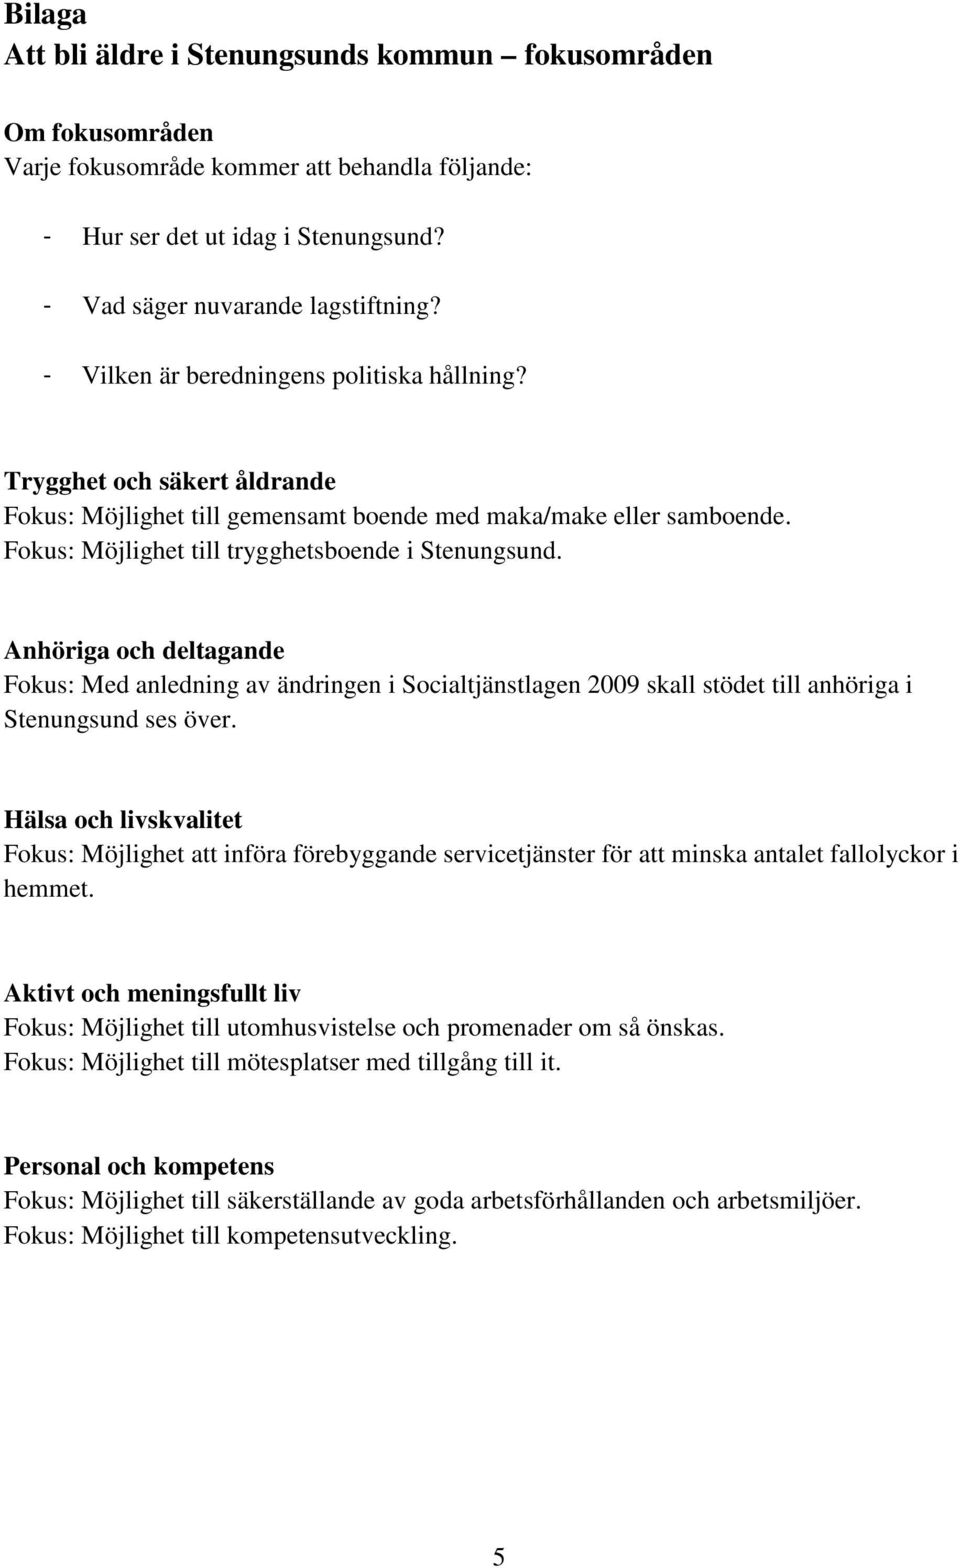 Anhöriga och deltagande Fokus: Med anledning av ändringen i Socialtjänstlagen 2009 skall stödet till anhöriga i Stenungsund ses över.